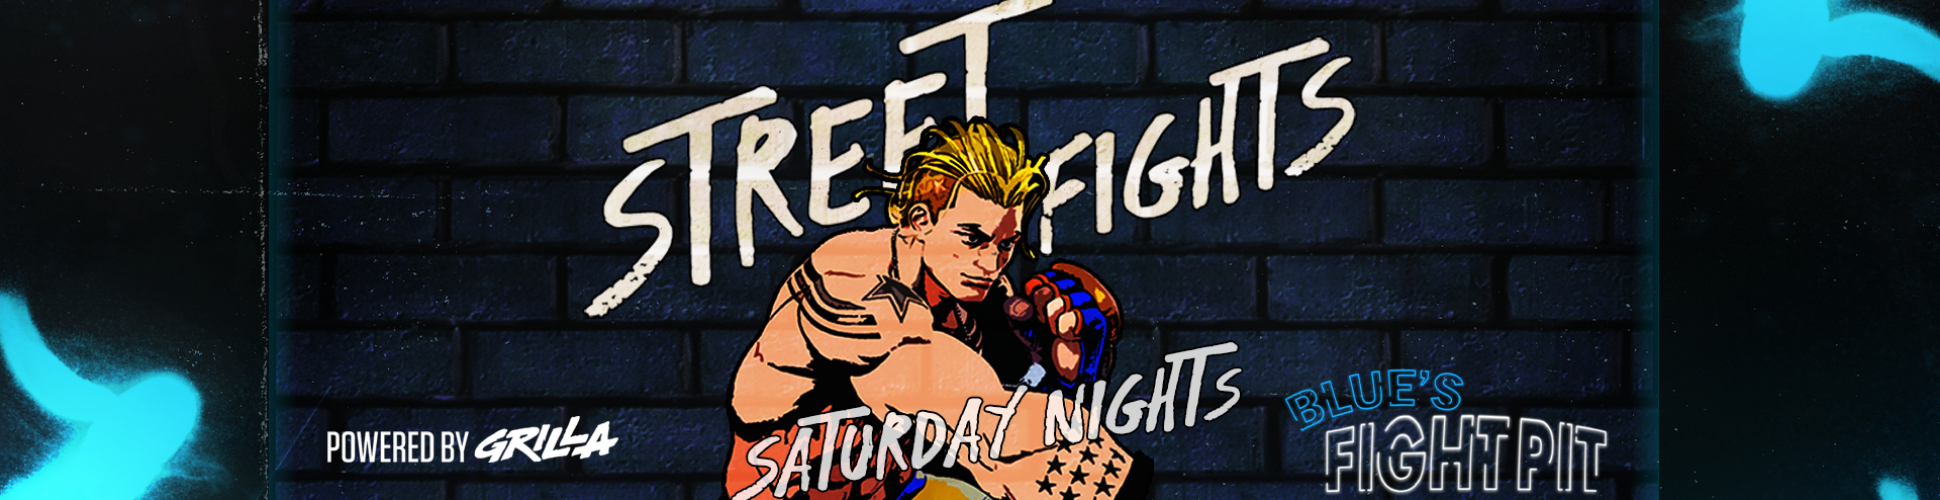 Blue's Fight Pit: Street Fights R4 Saturday Nights #22